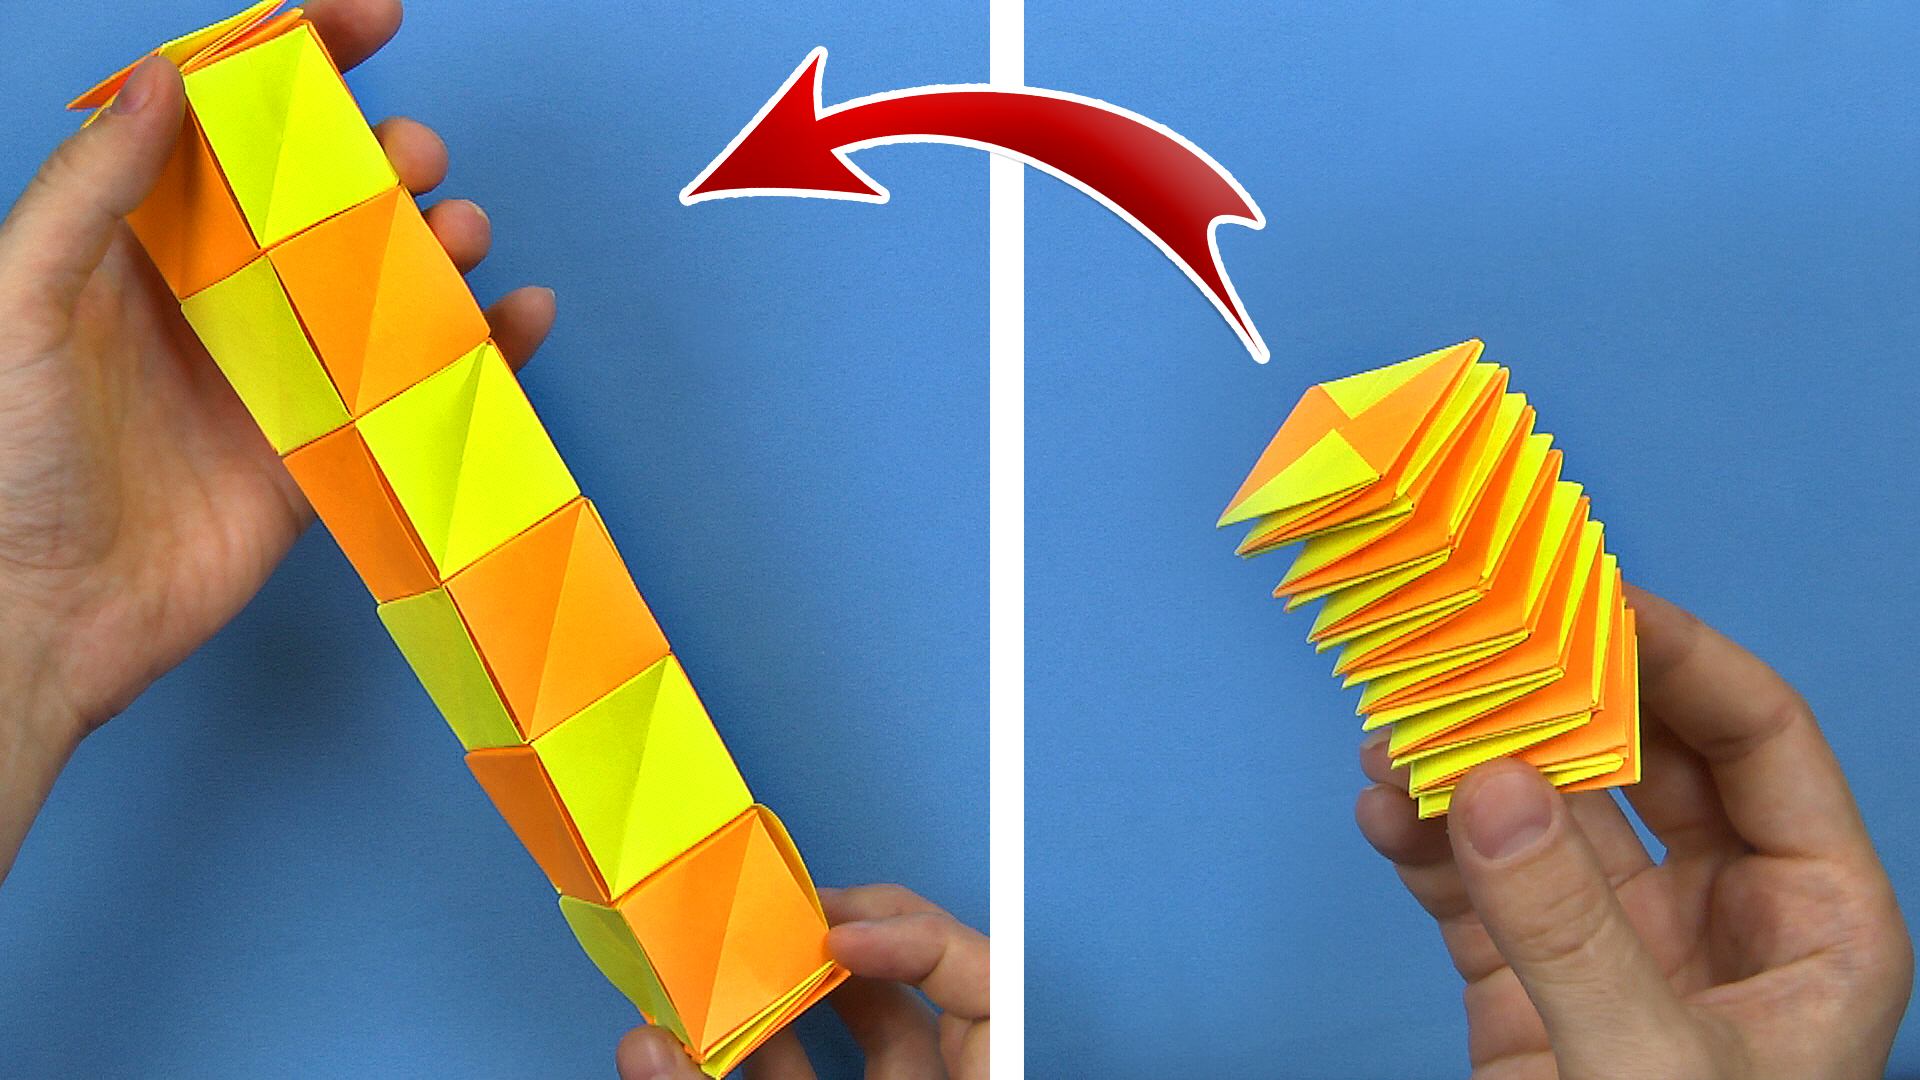 DIY Подвижная игрушка из бумаги - Гонки. Поделки из бумаги своими руками